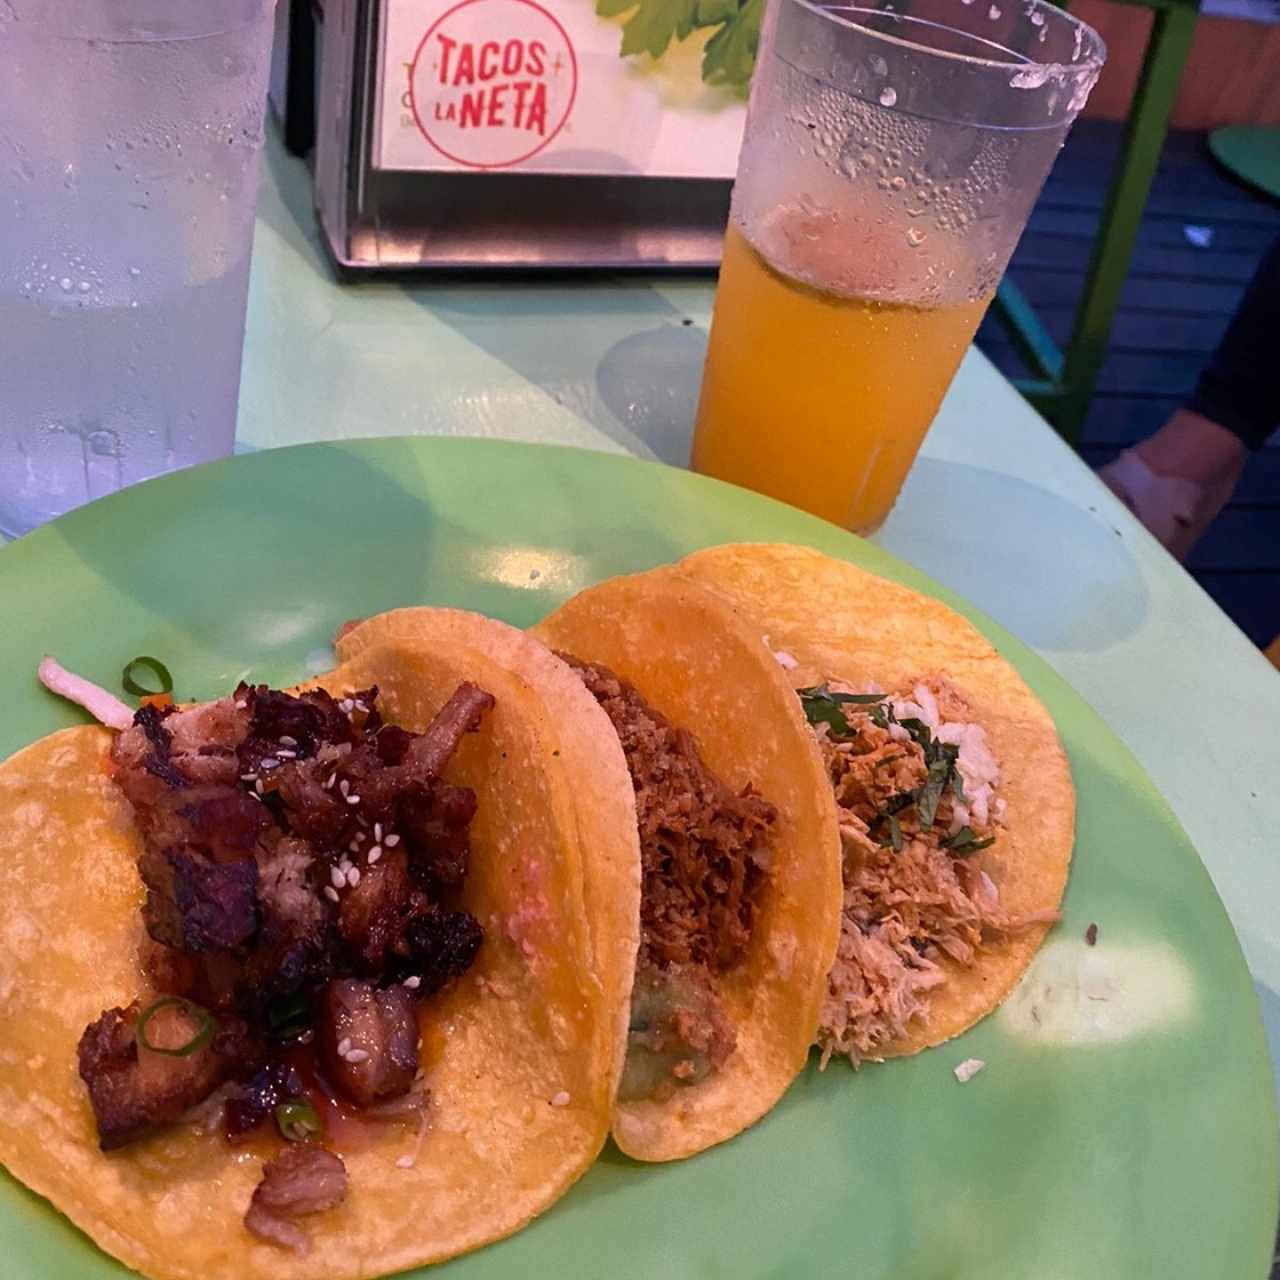 Tacos Tropicales - Panza , cochinita pibil ,pollo pistolero y margarita de maracuya 